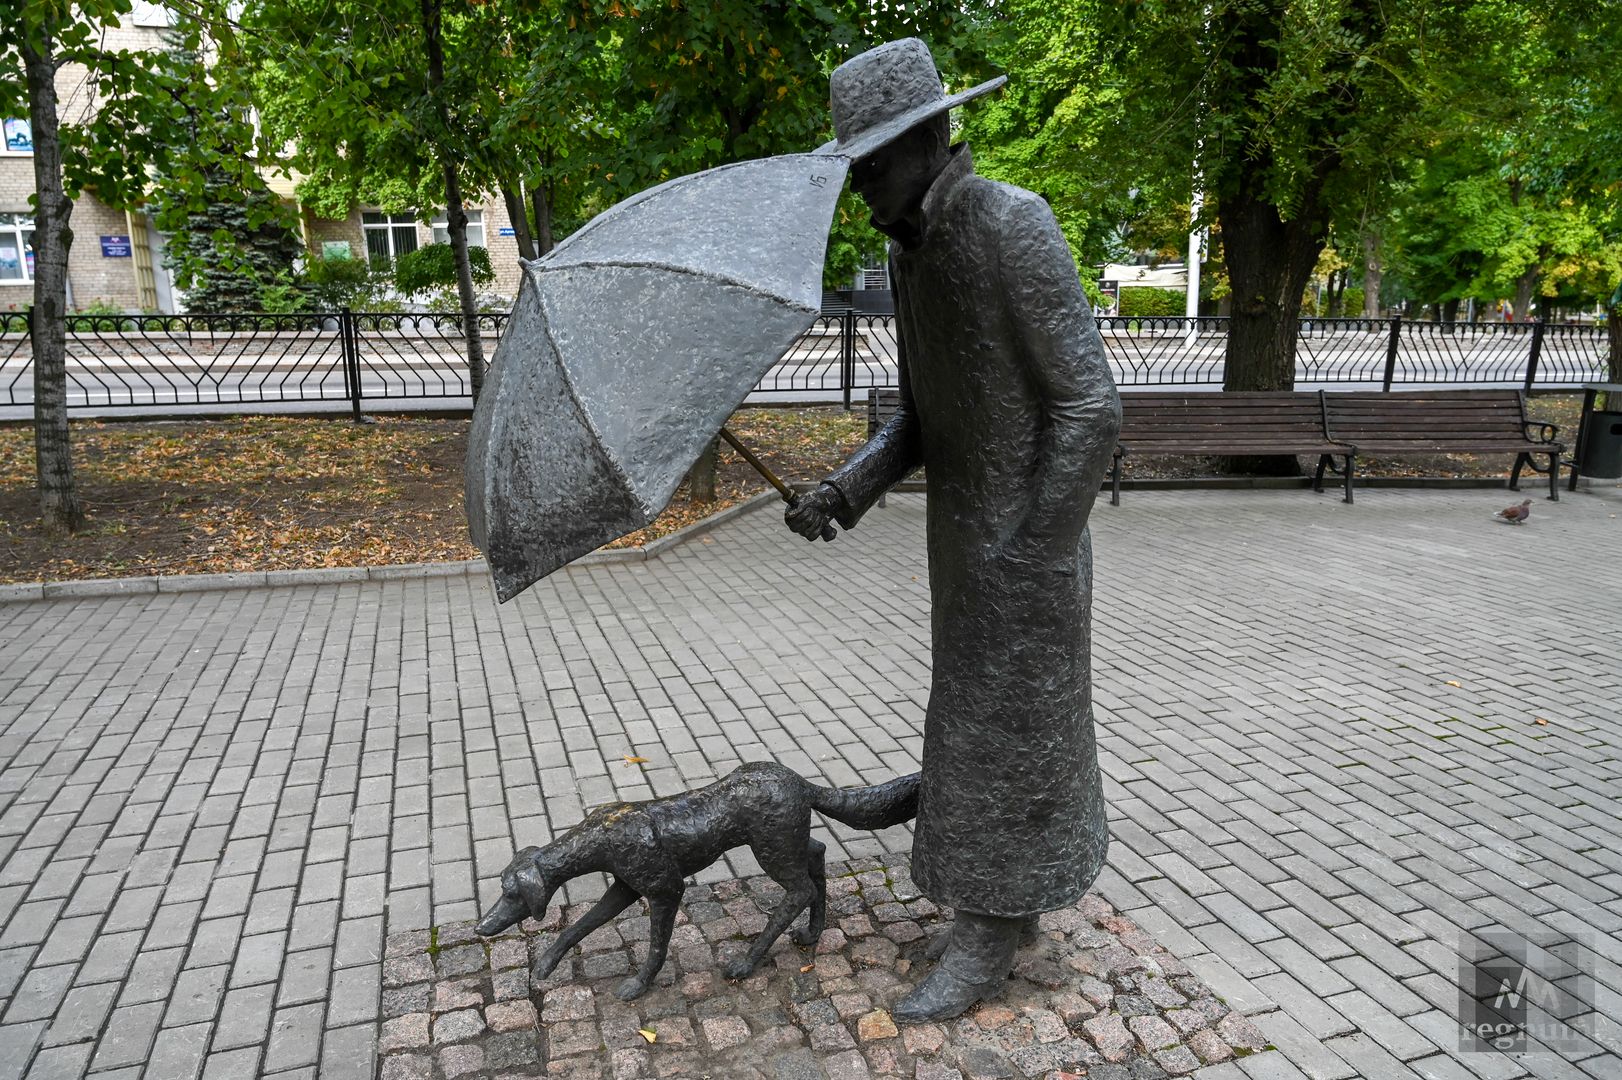 В 2014 году на бульваре имени Шевченко в Донецке был установлен мирный арт-объект «Друг». Скульптура изображает мужчину, который прикрывает пса зонтом